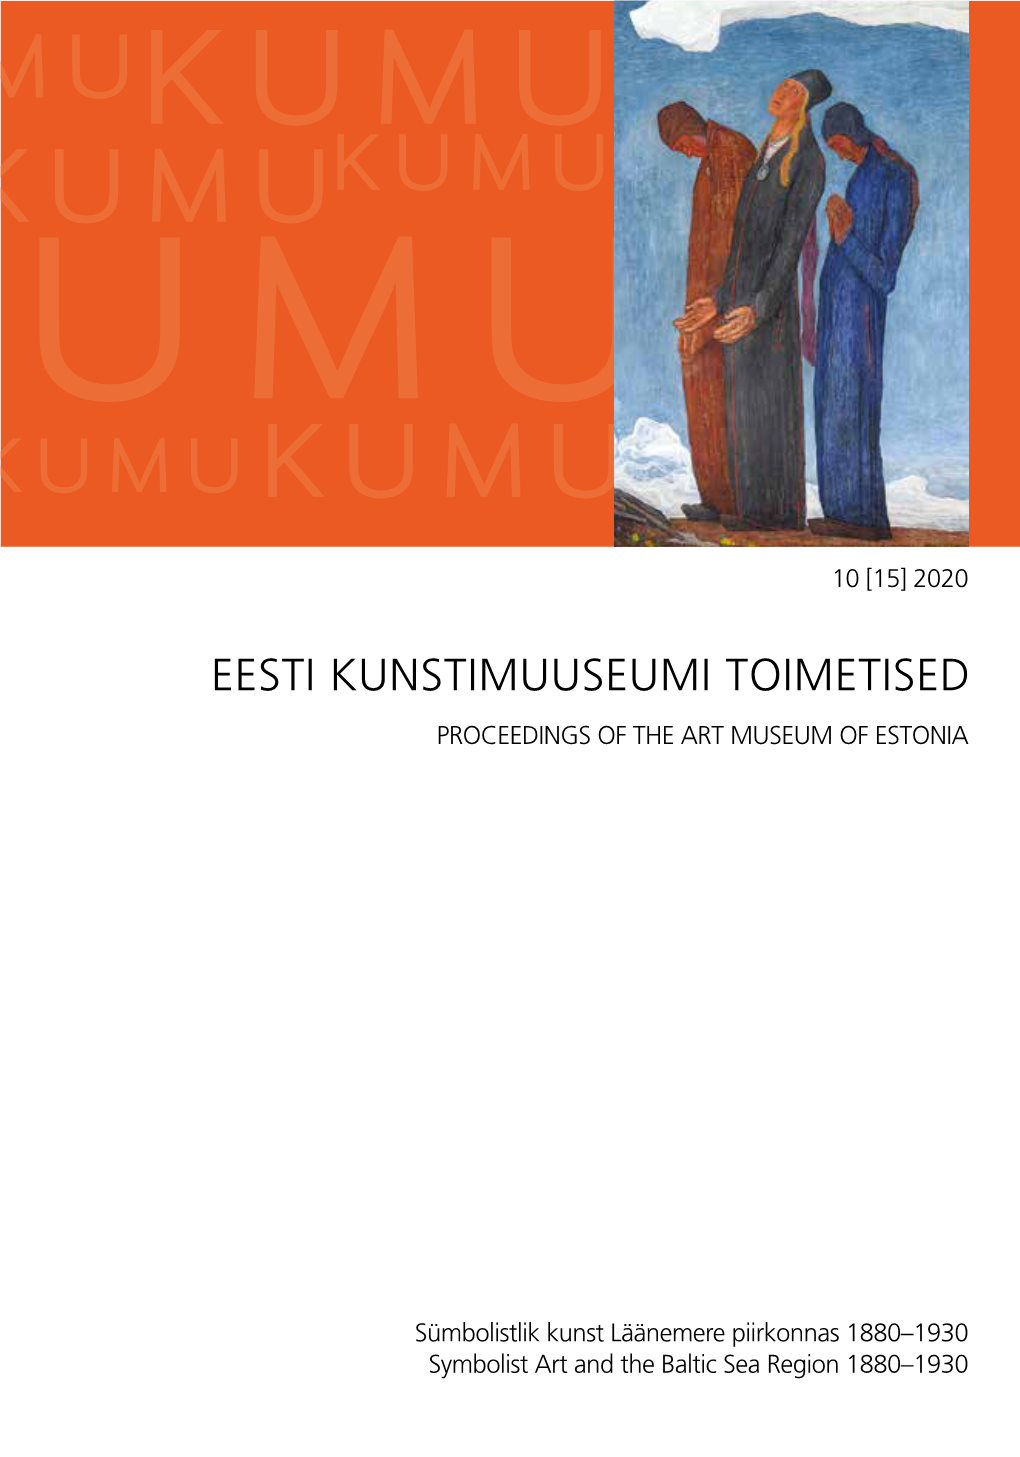 Eesti Kunstimuuseumi Toimetised Proceedings of the Art Museum of Estonia Eesti Kunstimuuseumi Toime